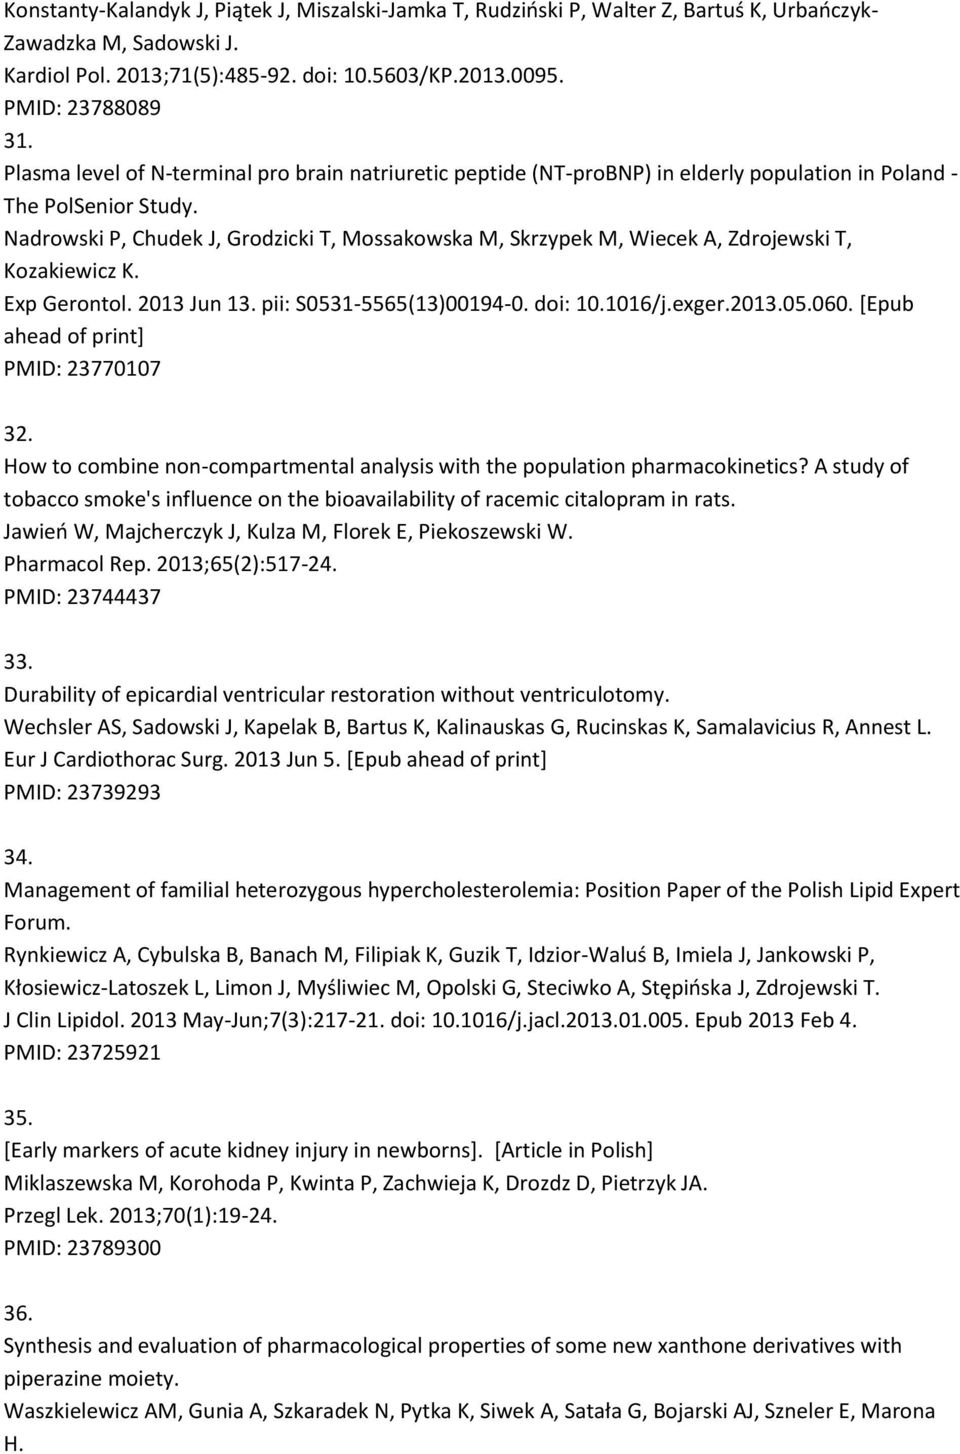 Nadrowski P, Chudek J, Grodzicki T, Mossakowska M, Skrzypek M, Wiecek A, Zdrojewski T, Kozakiewicz K. Exp Gerontol. 2013 Jun 13. pii: S0531-5565(13)00194-0. doi: 10.1016/j.exger.2013.05.060.